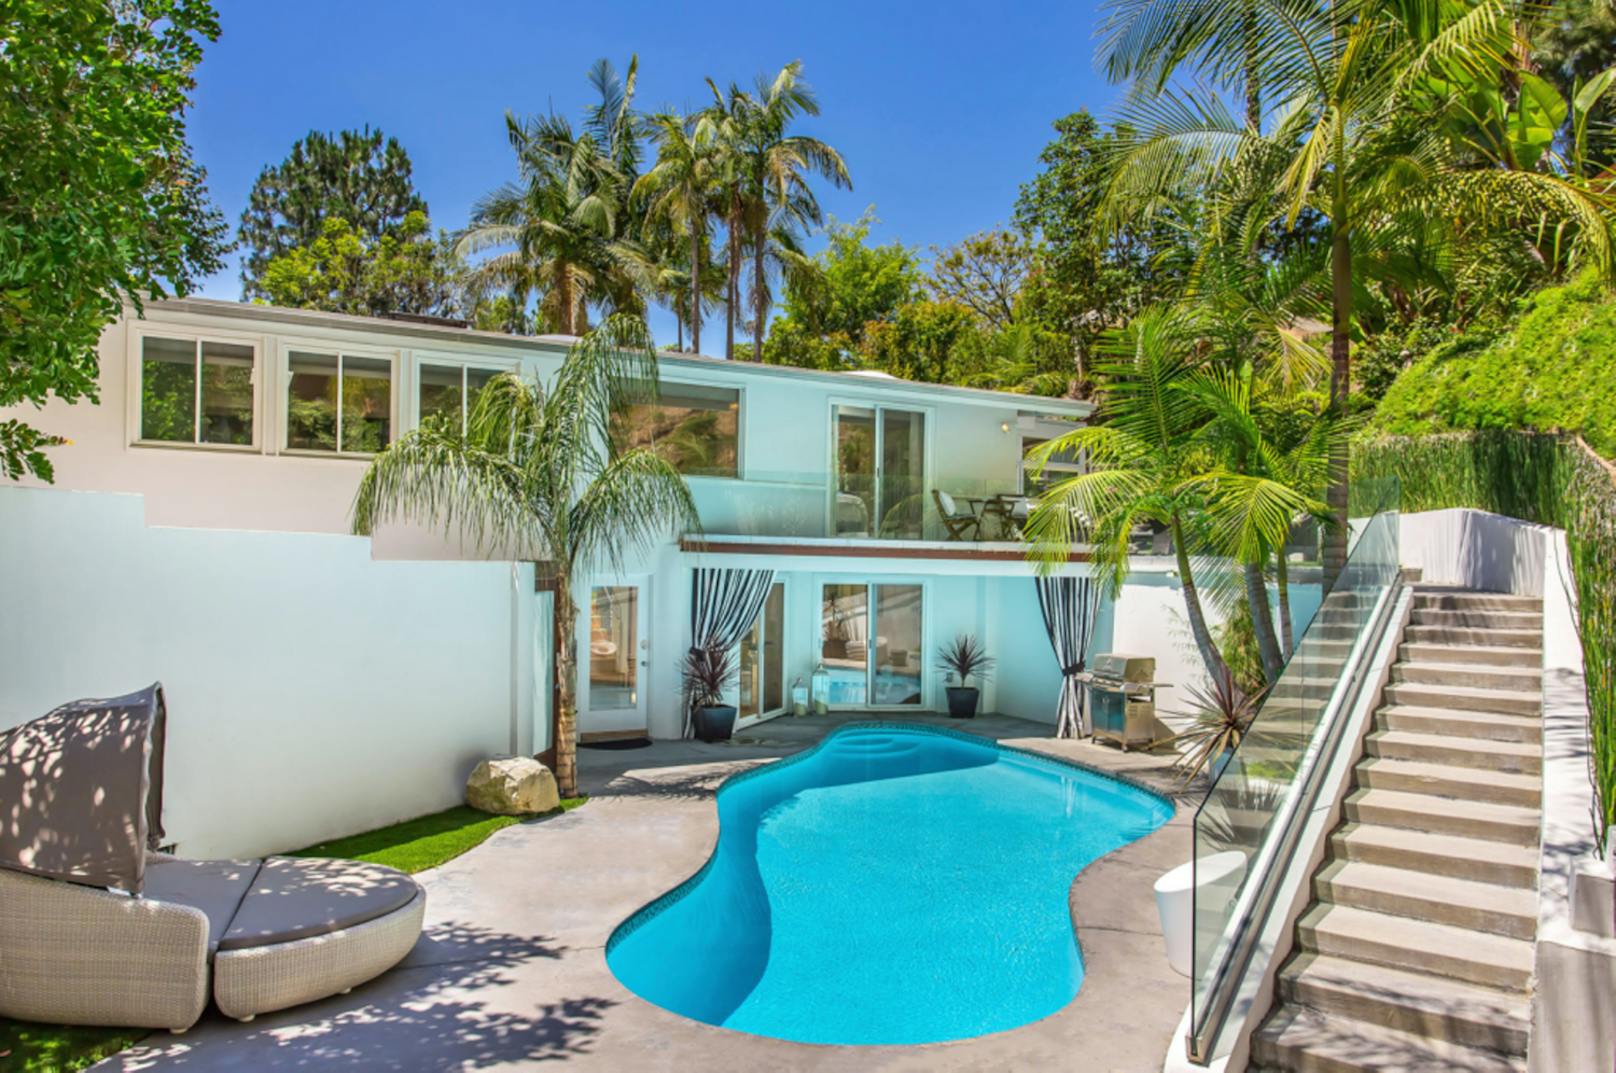 Dieses Häuschen wurde 1957 in Beverly Hills erbaut und ist bis heute eines der liebsten Mietobjekte der Superstars.